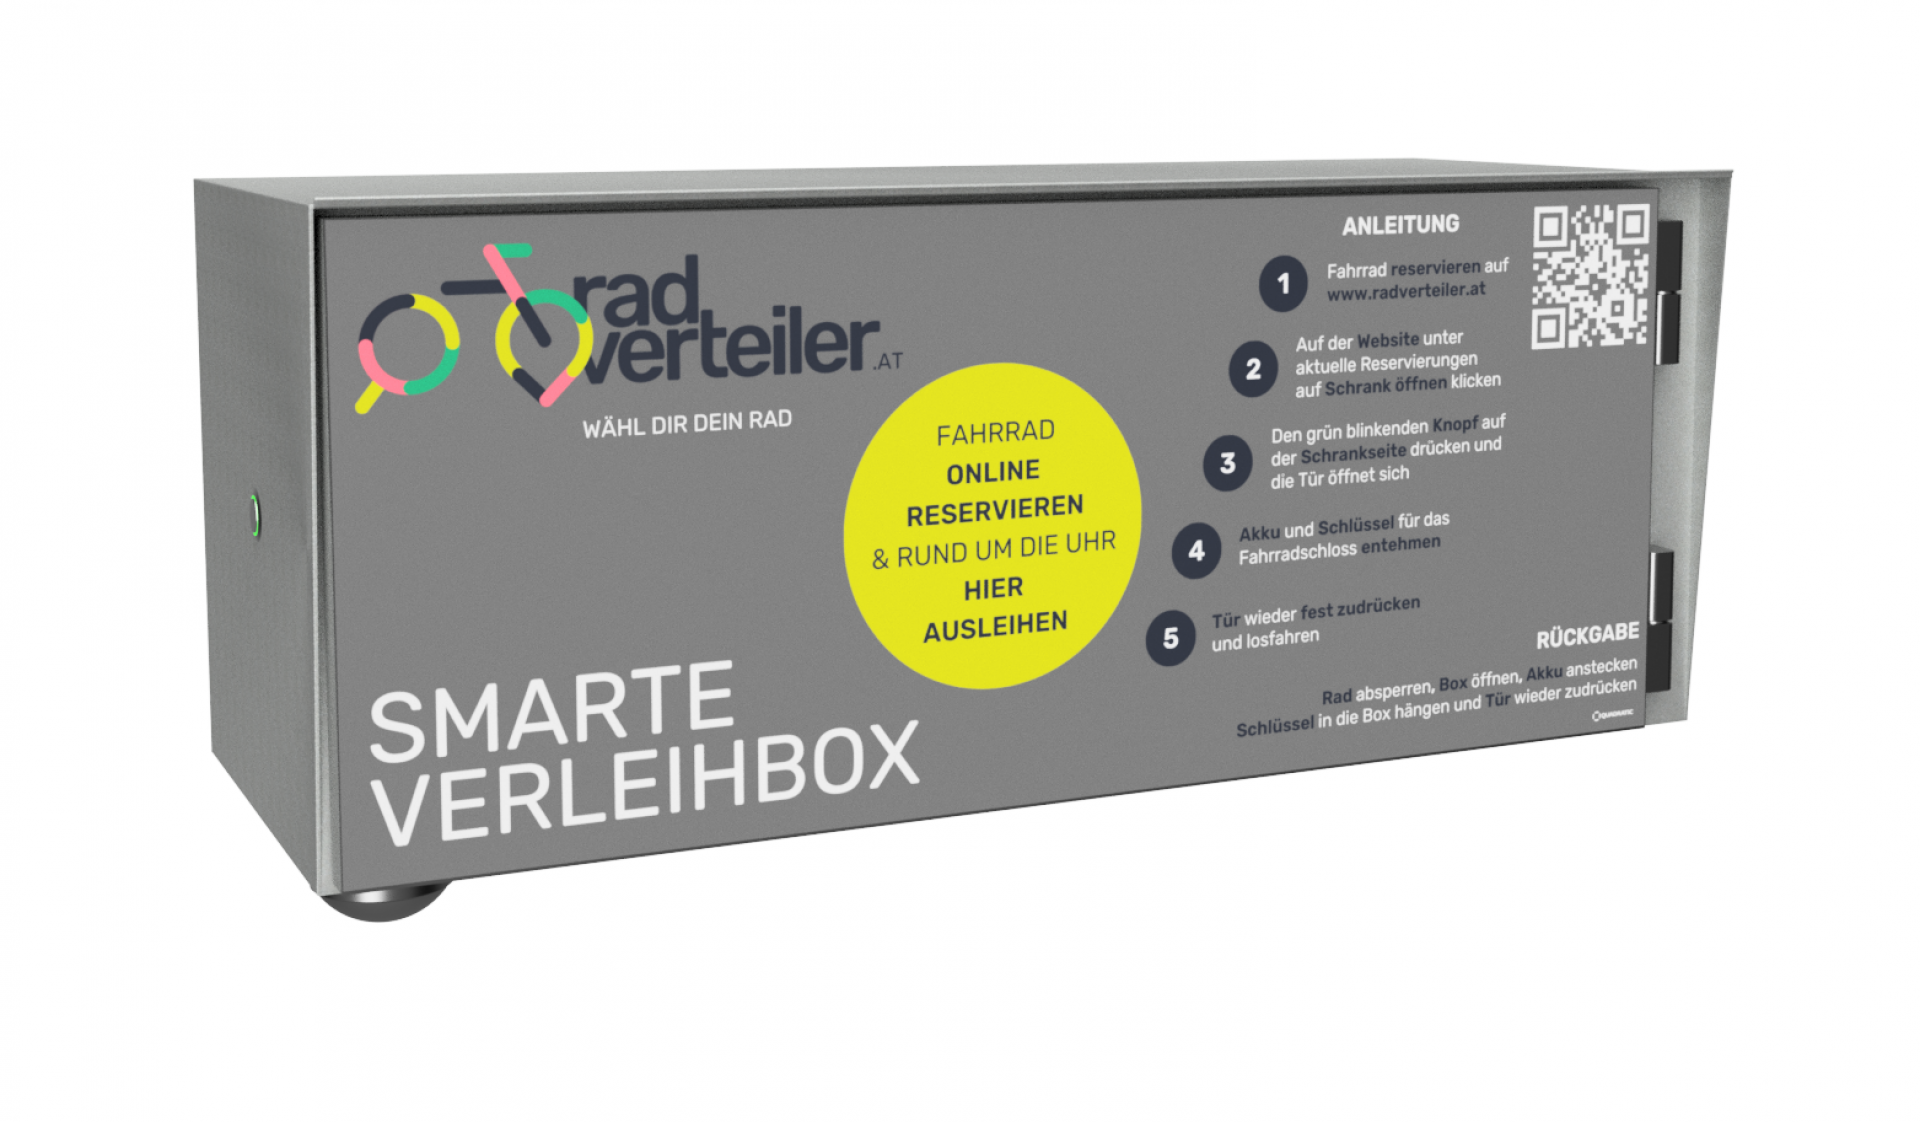 radverteiler - Smarte Verleihbox